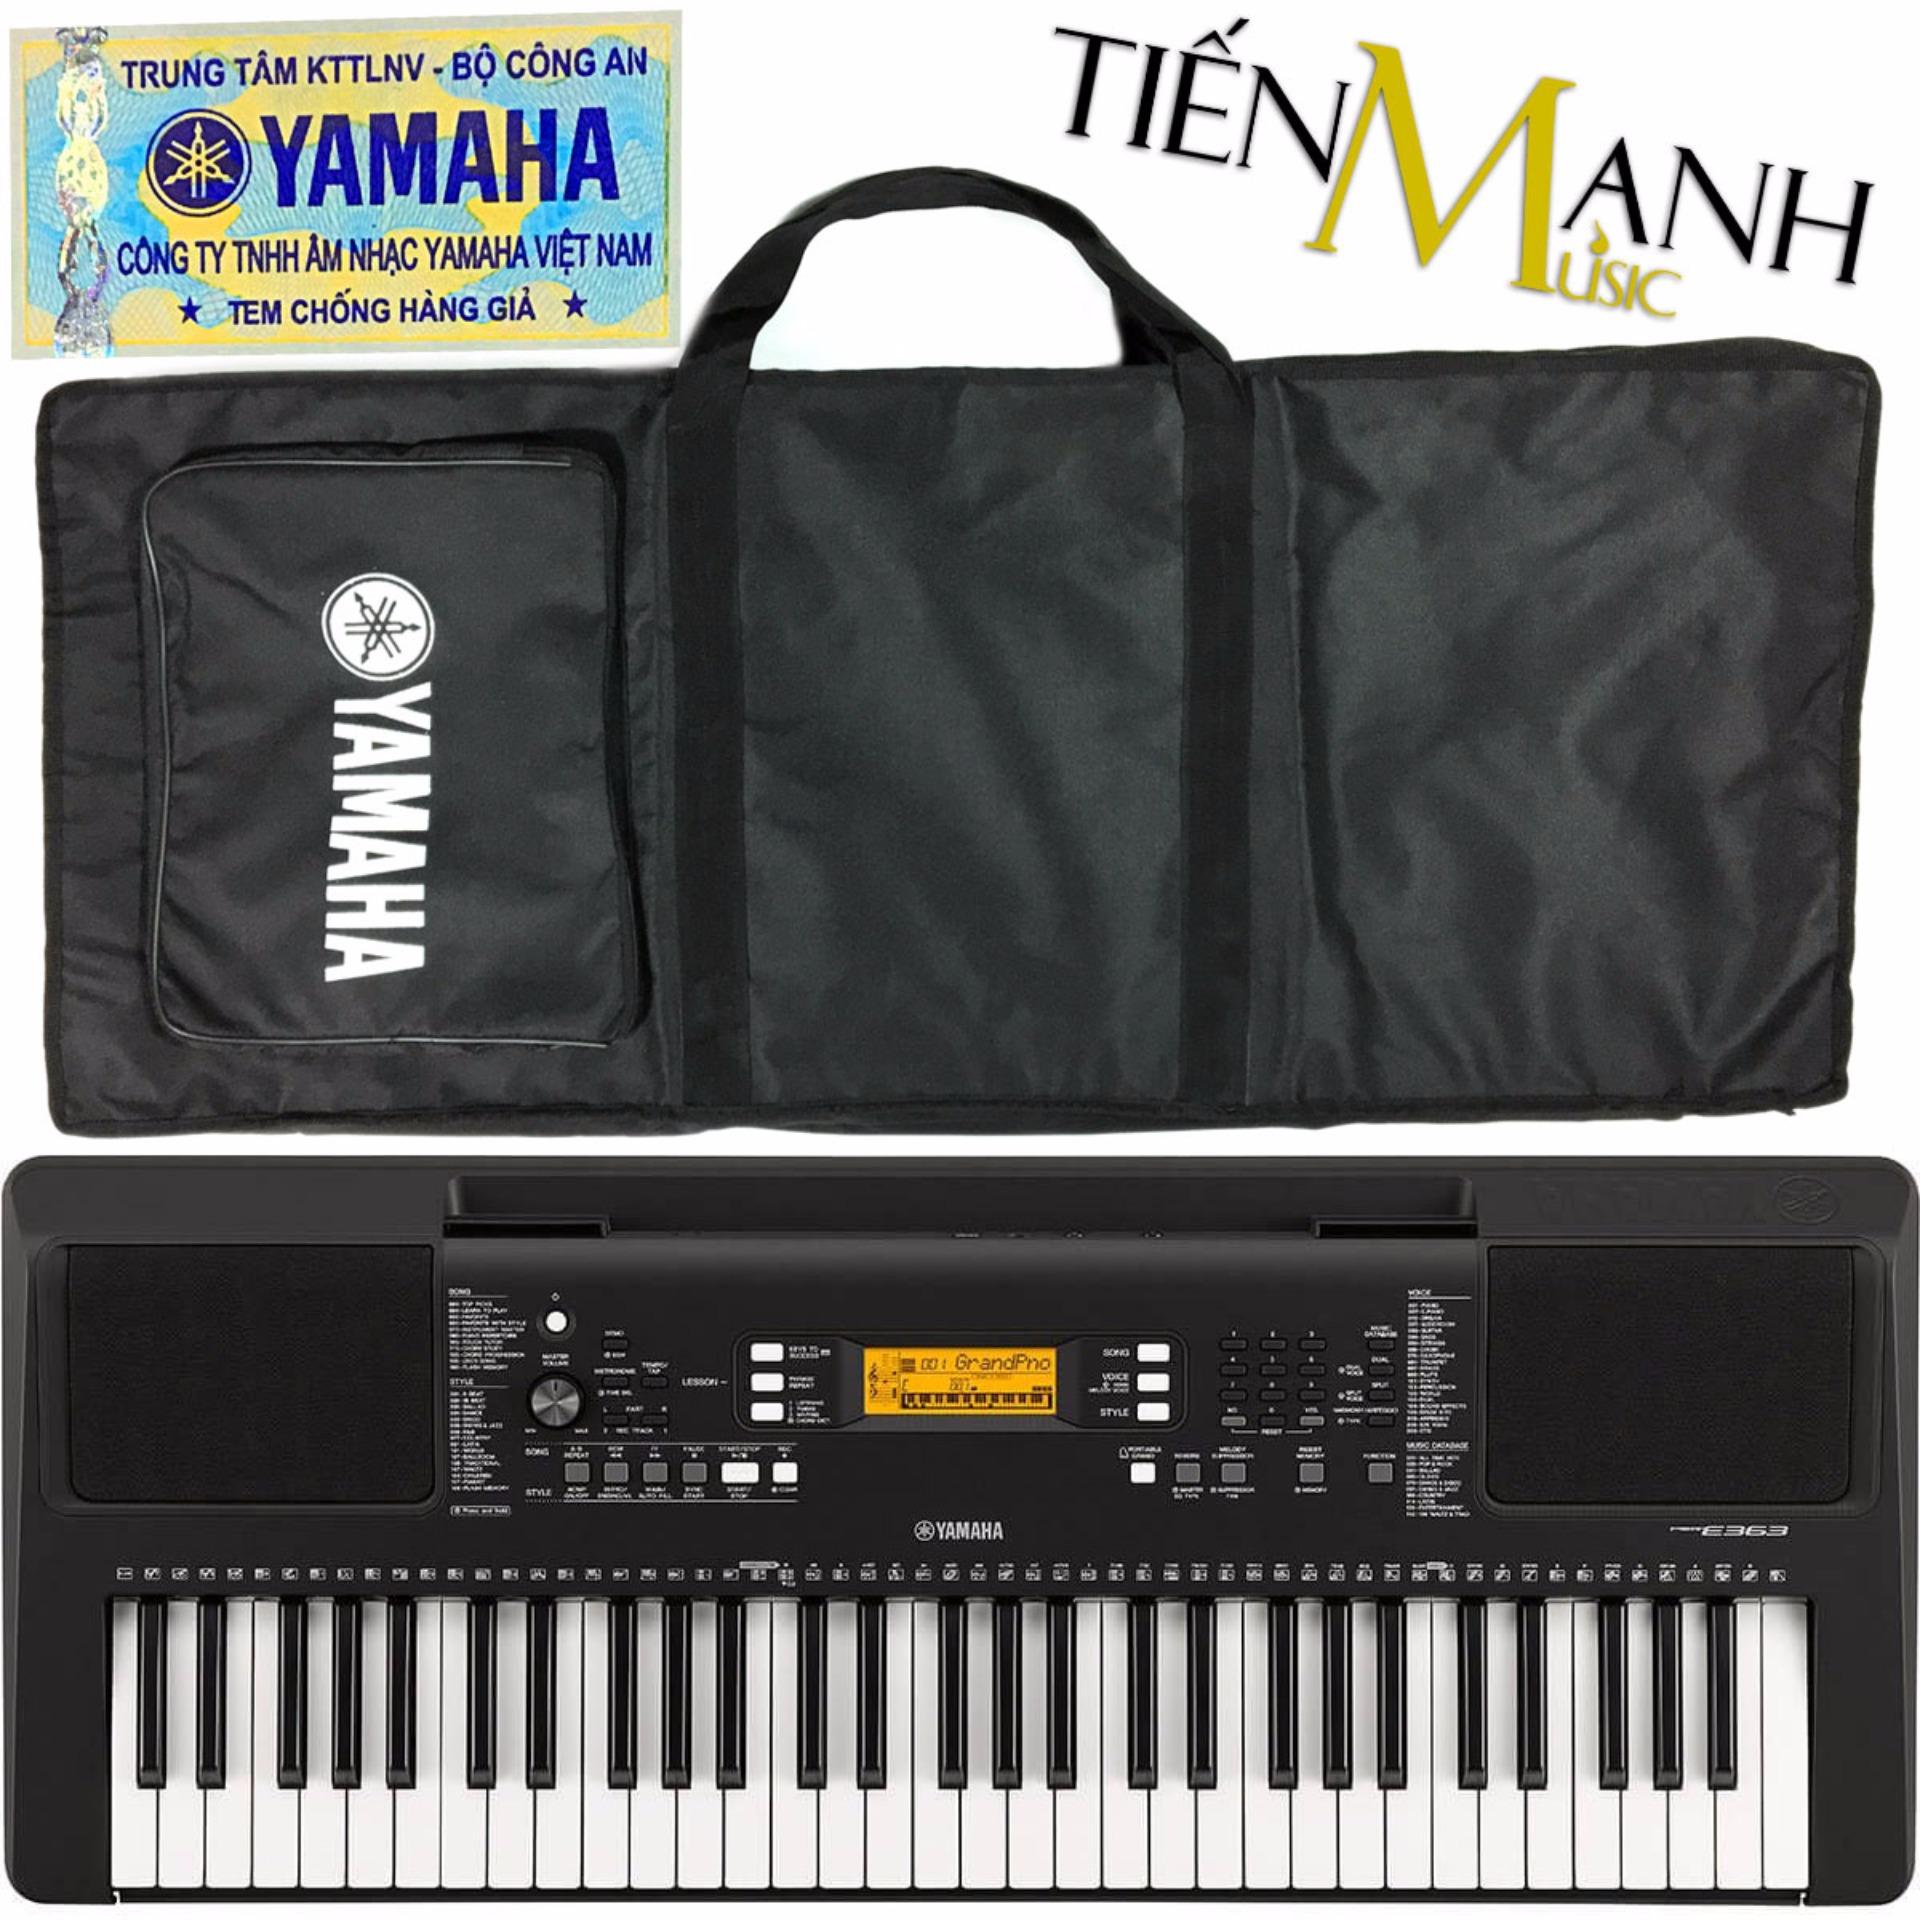 Đàn Organ Yamaha PSR-E363 - Hãng phân phối chính thức (Keyboard PSR E363 - Hàng chính hãng, Có tem chống...